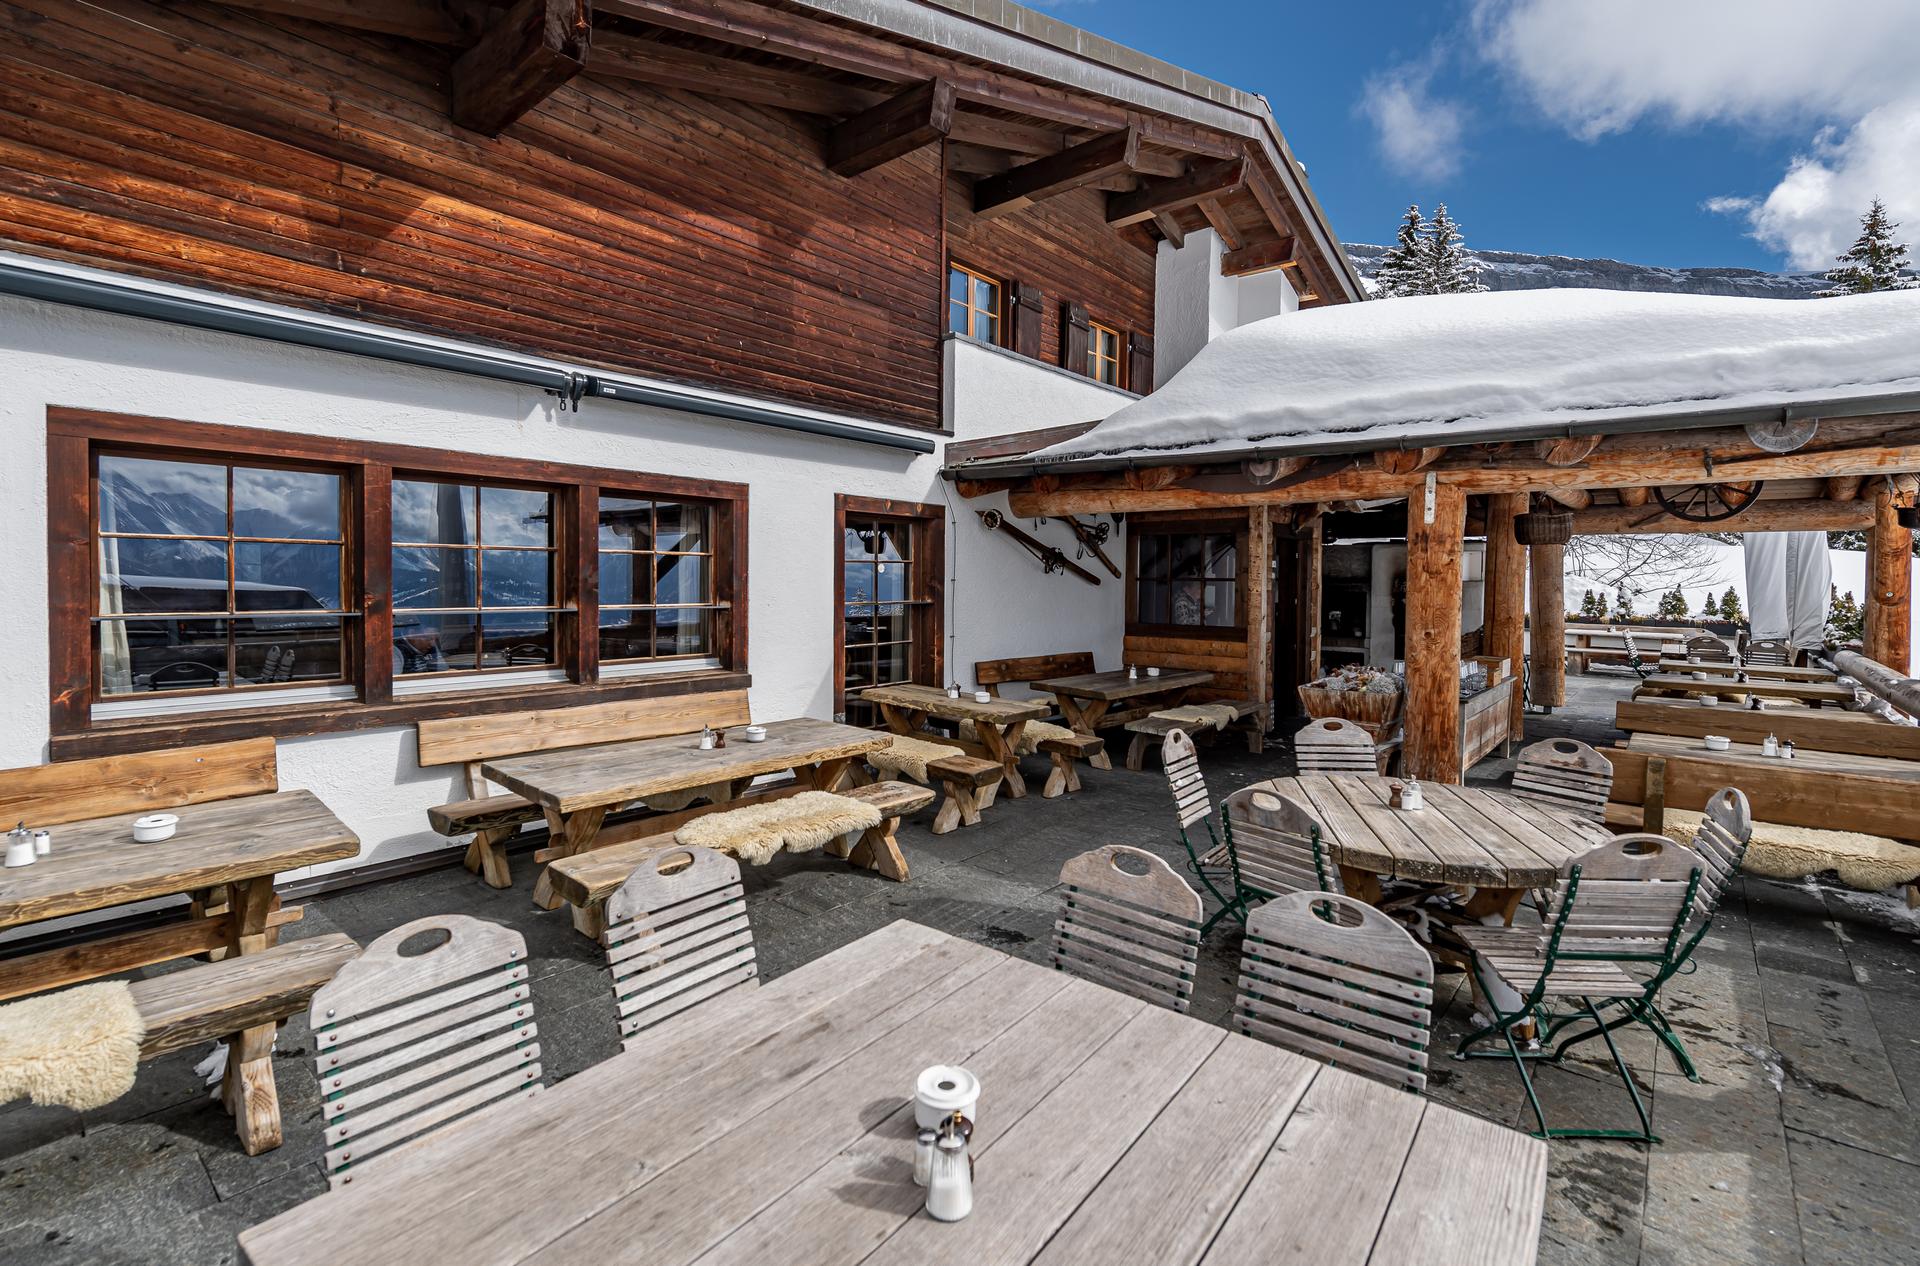 terrasse mit stühlen und tischen außenbereich im bergrestaurant ustria startgels flims restaurants in den bergen